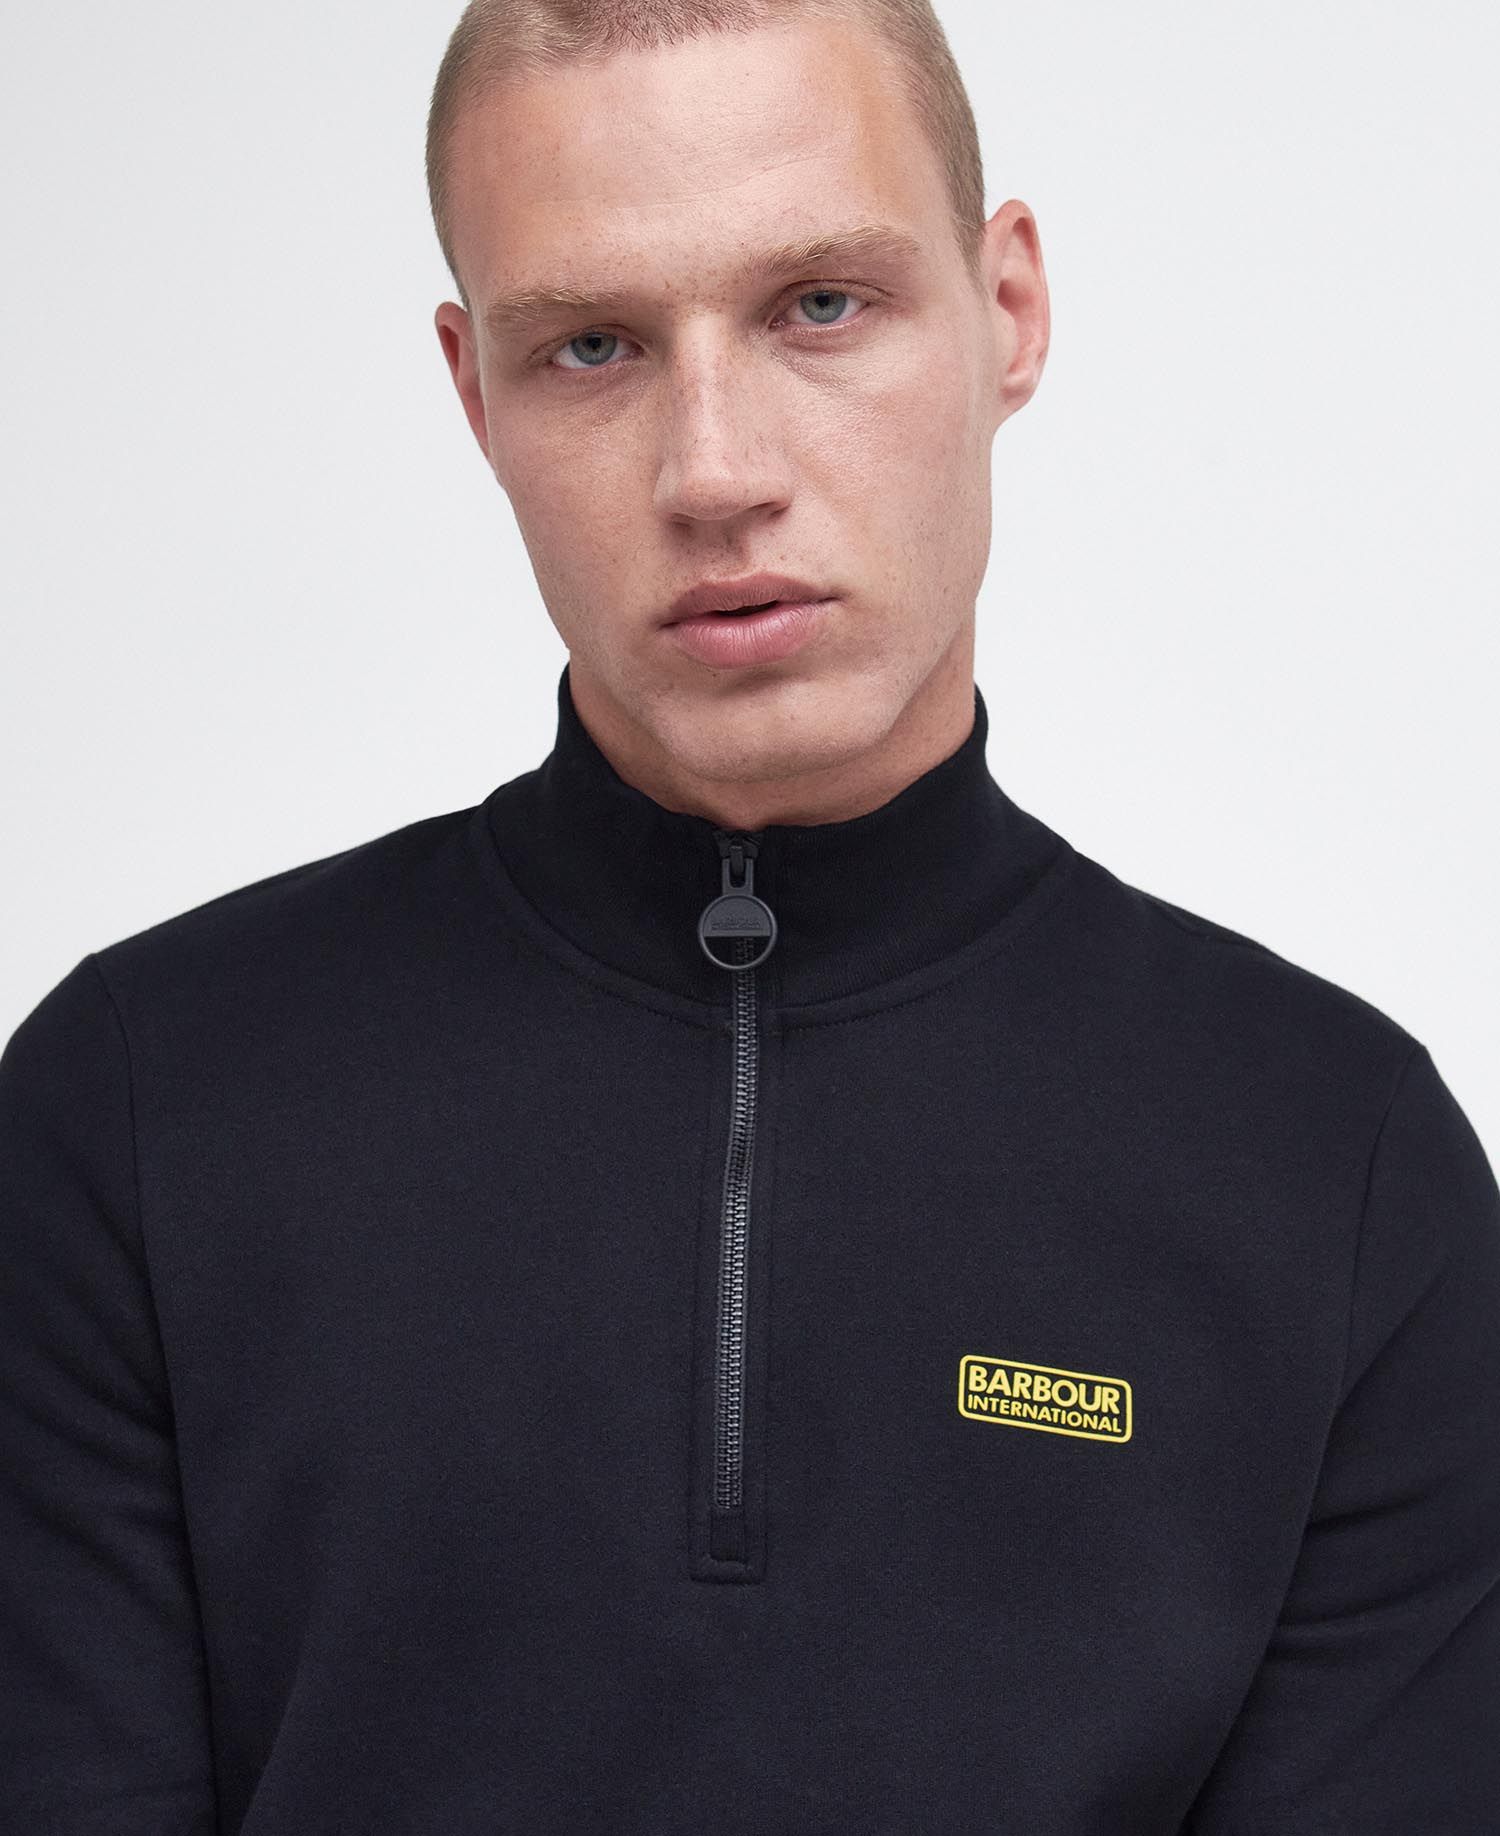 B.Intl Essential Half Zip Sweatshirt in Black | Barbour